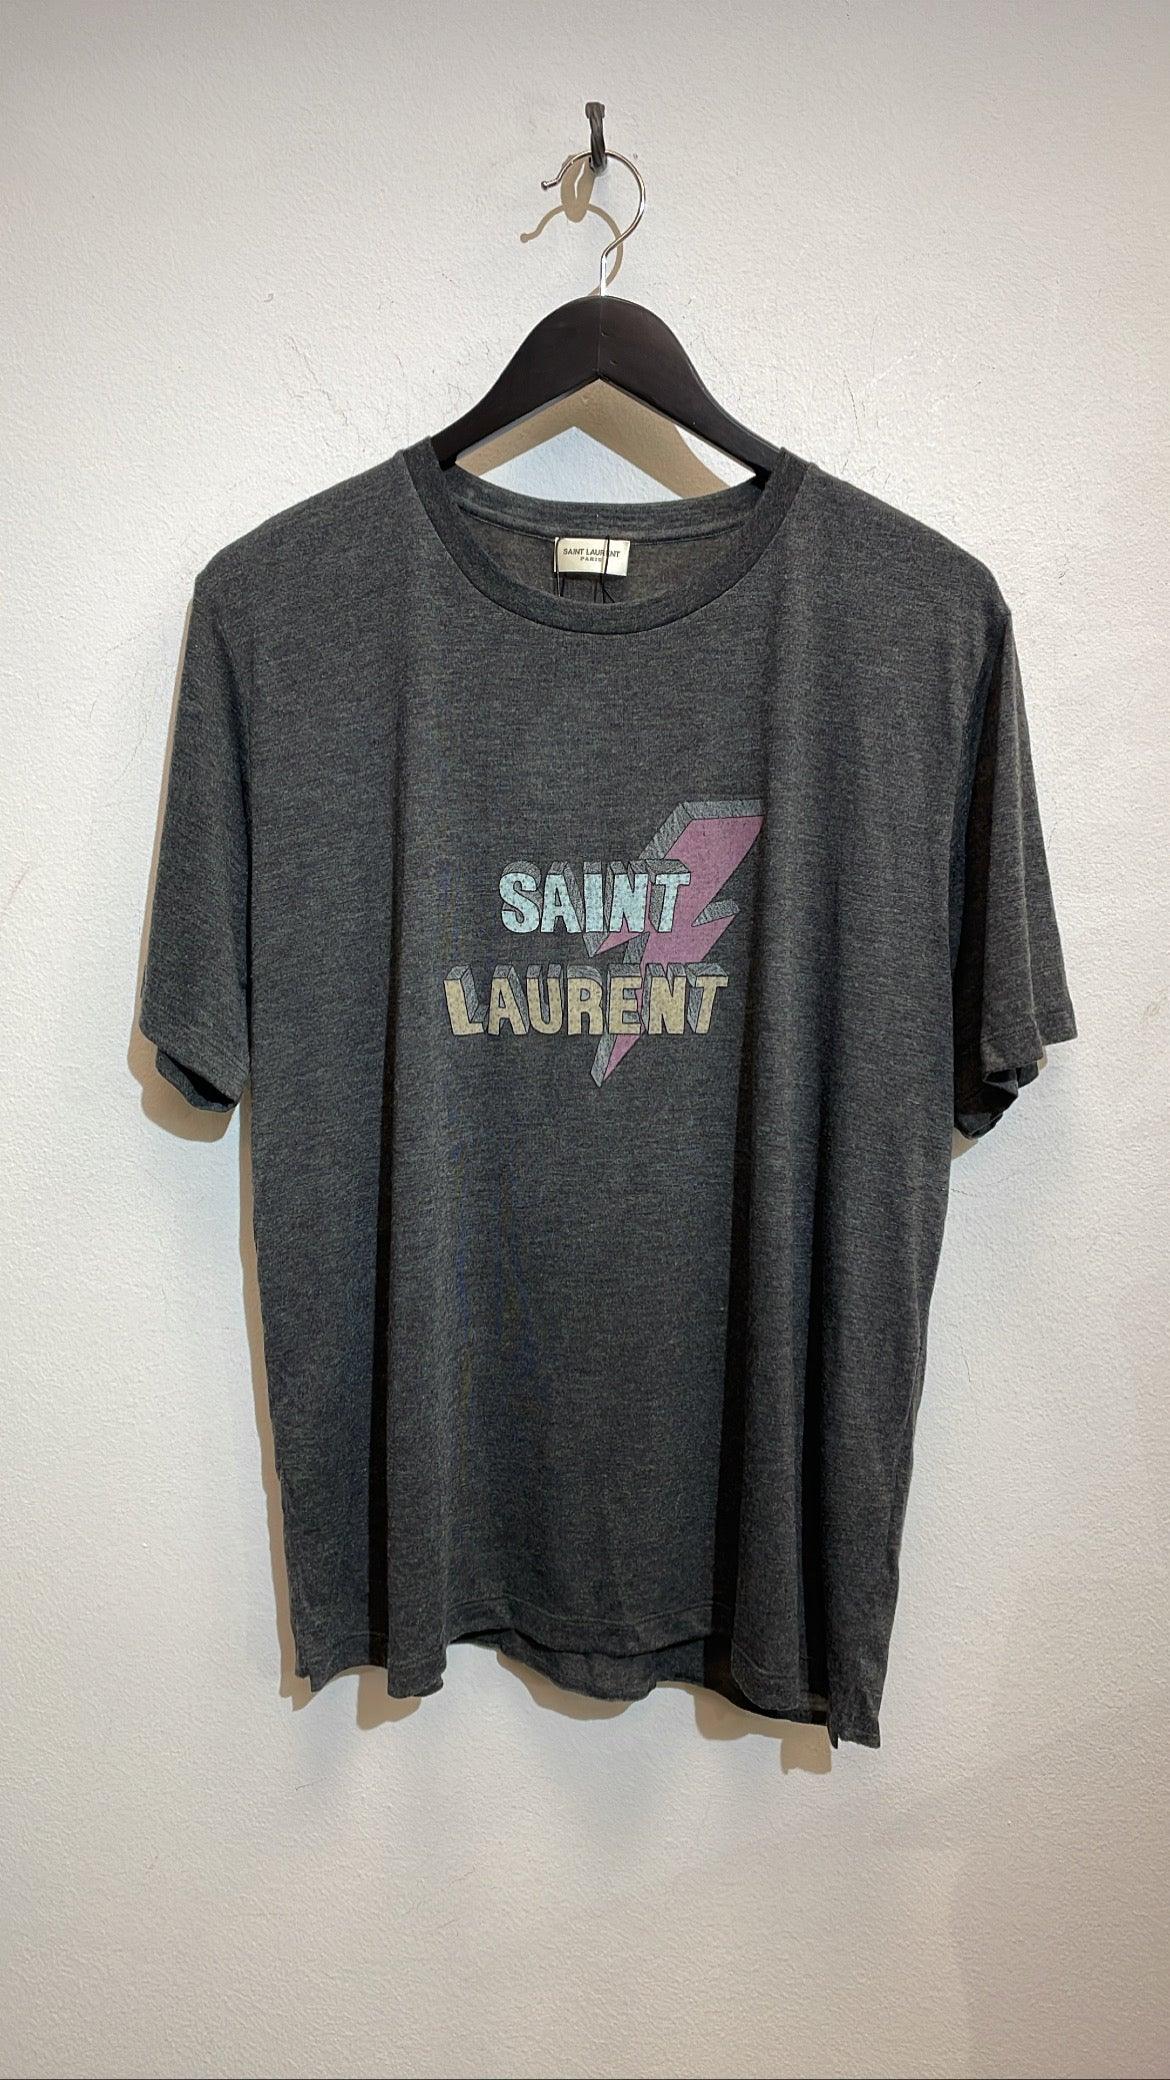 T-shirt - SAINT LAURENT - Abiti Vintage & Sales